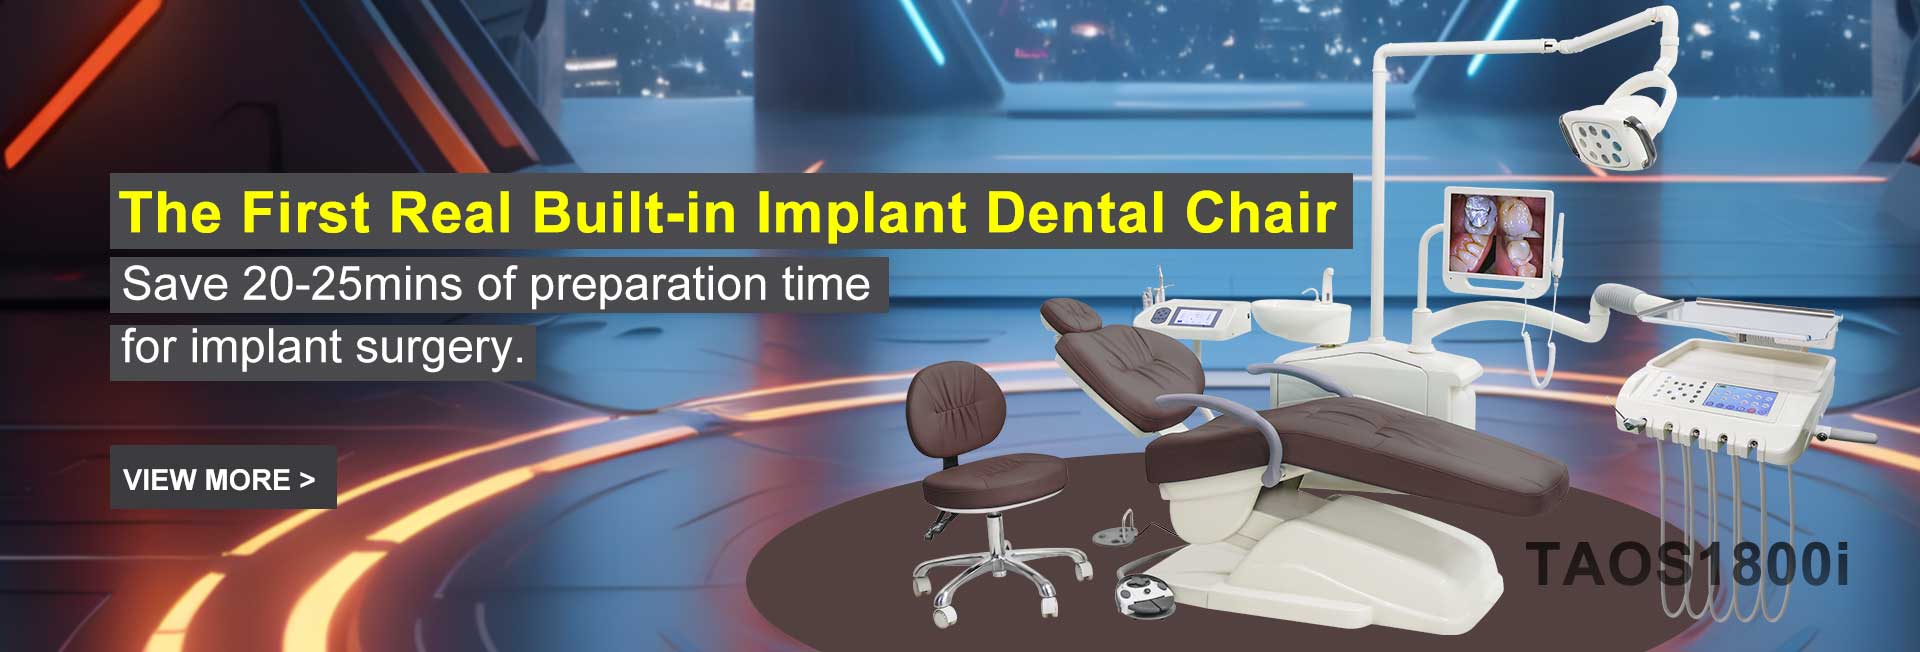 Χειρουργική καρέκλα οδοντικών εμφυτευμάτων TAOS1800i